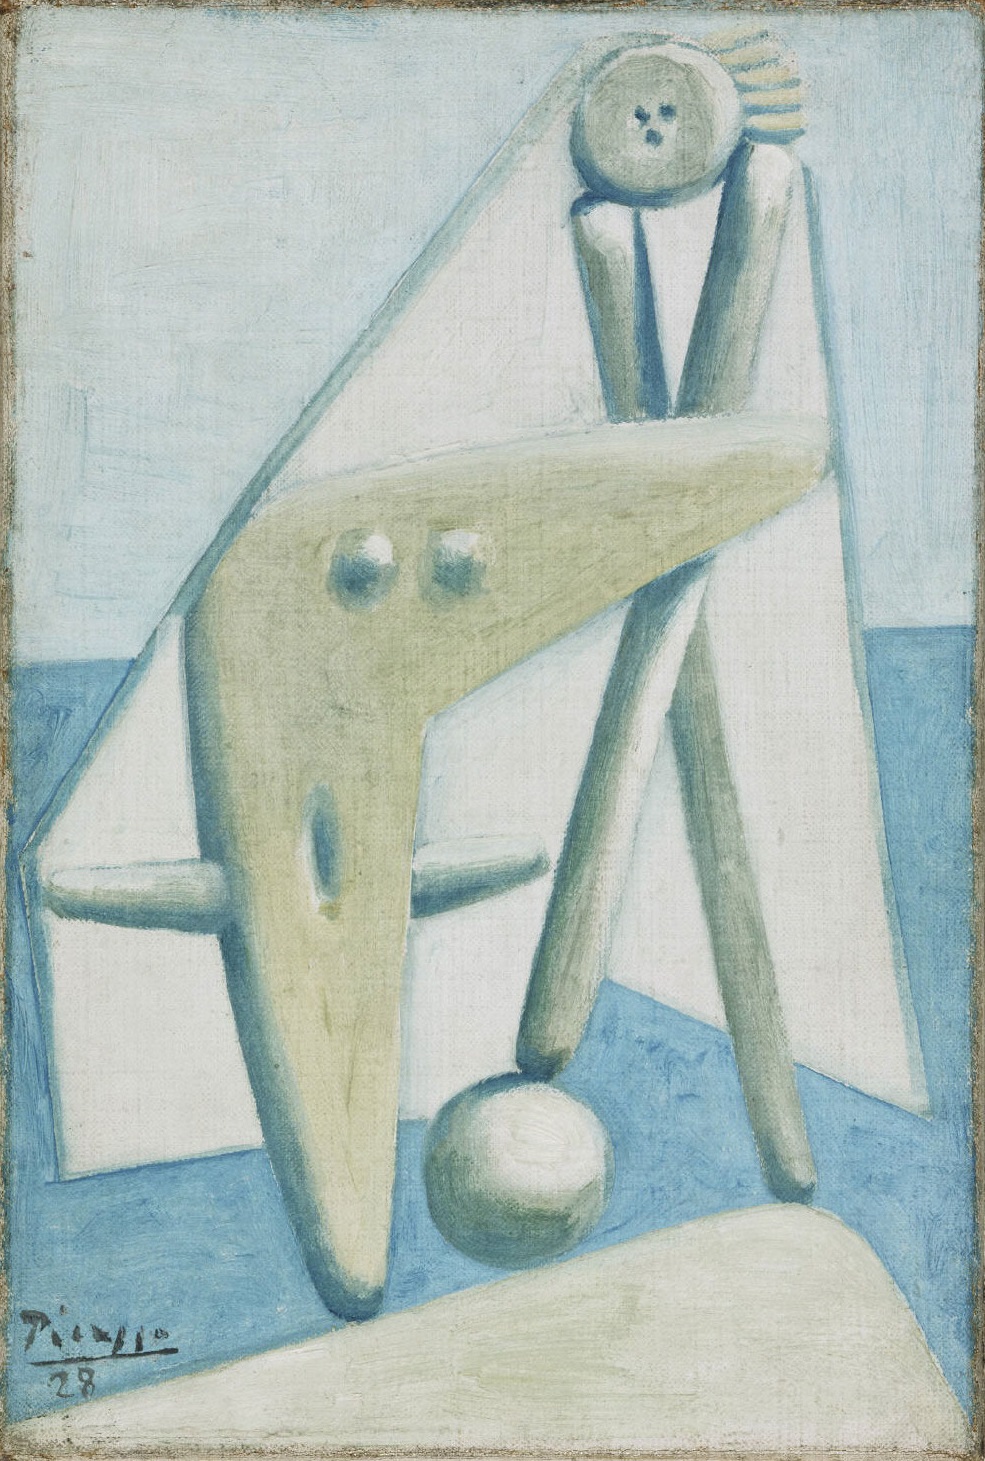 Picasso 1928 Bather, Design for a Monument. Dinard